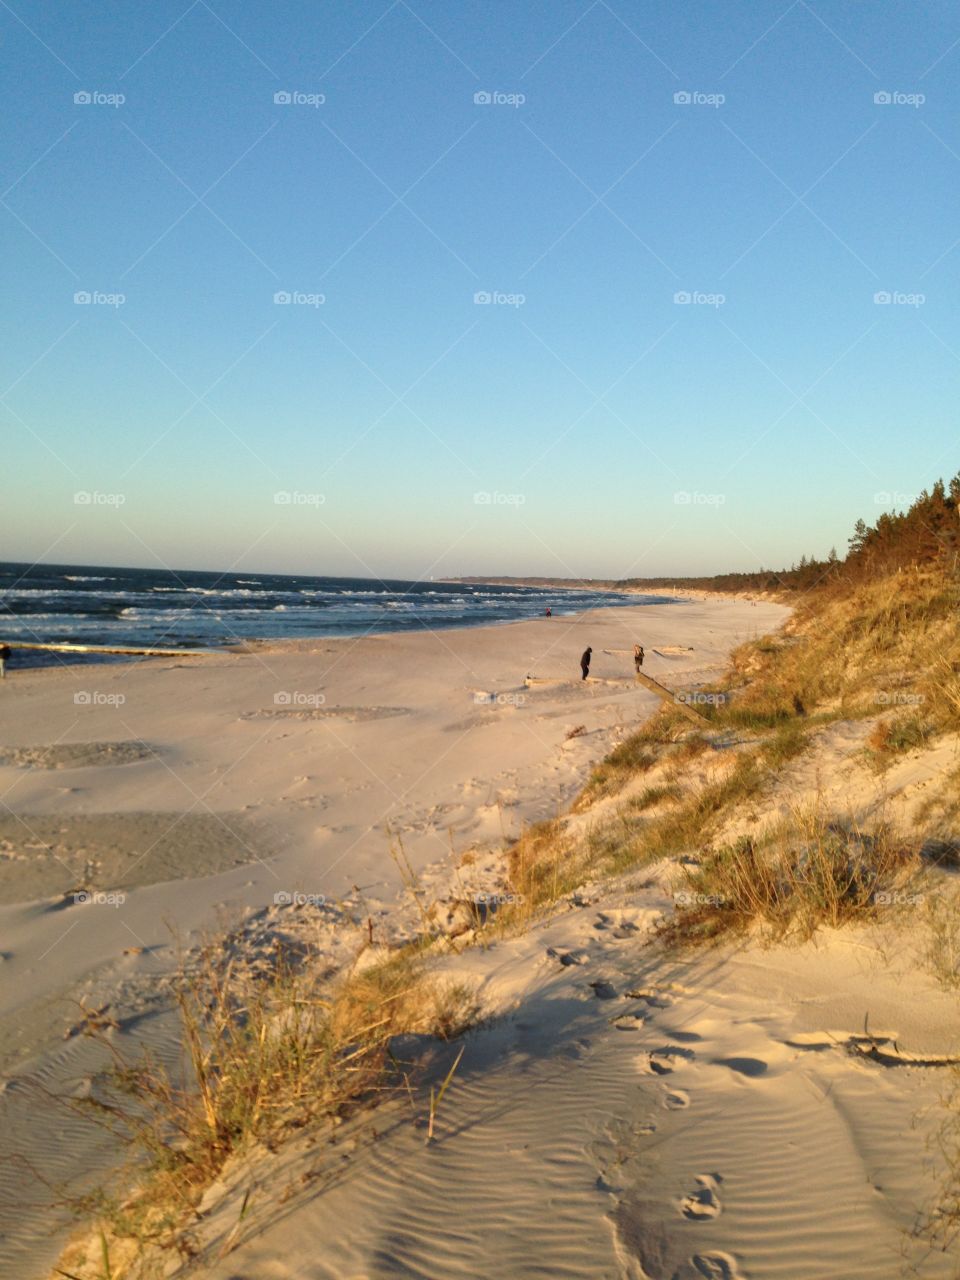 Sand dune at beach